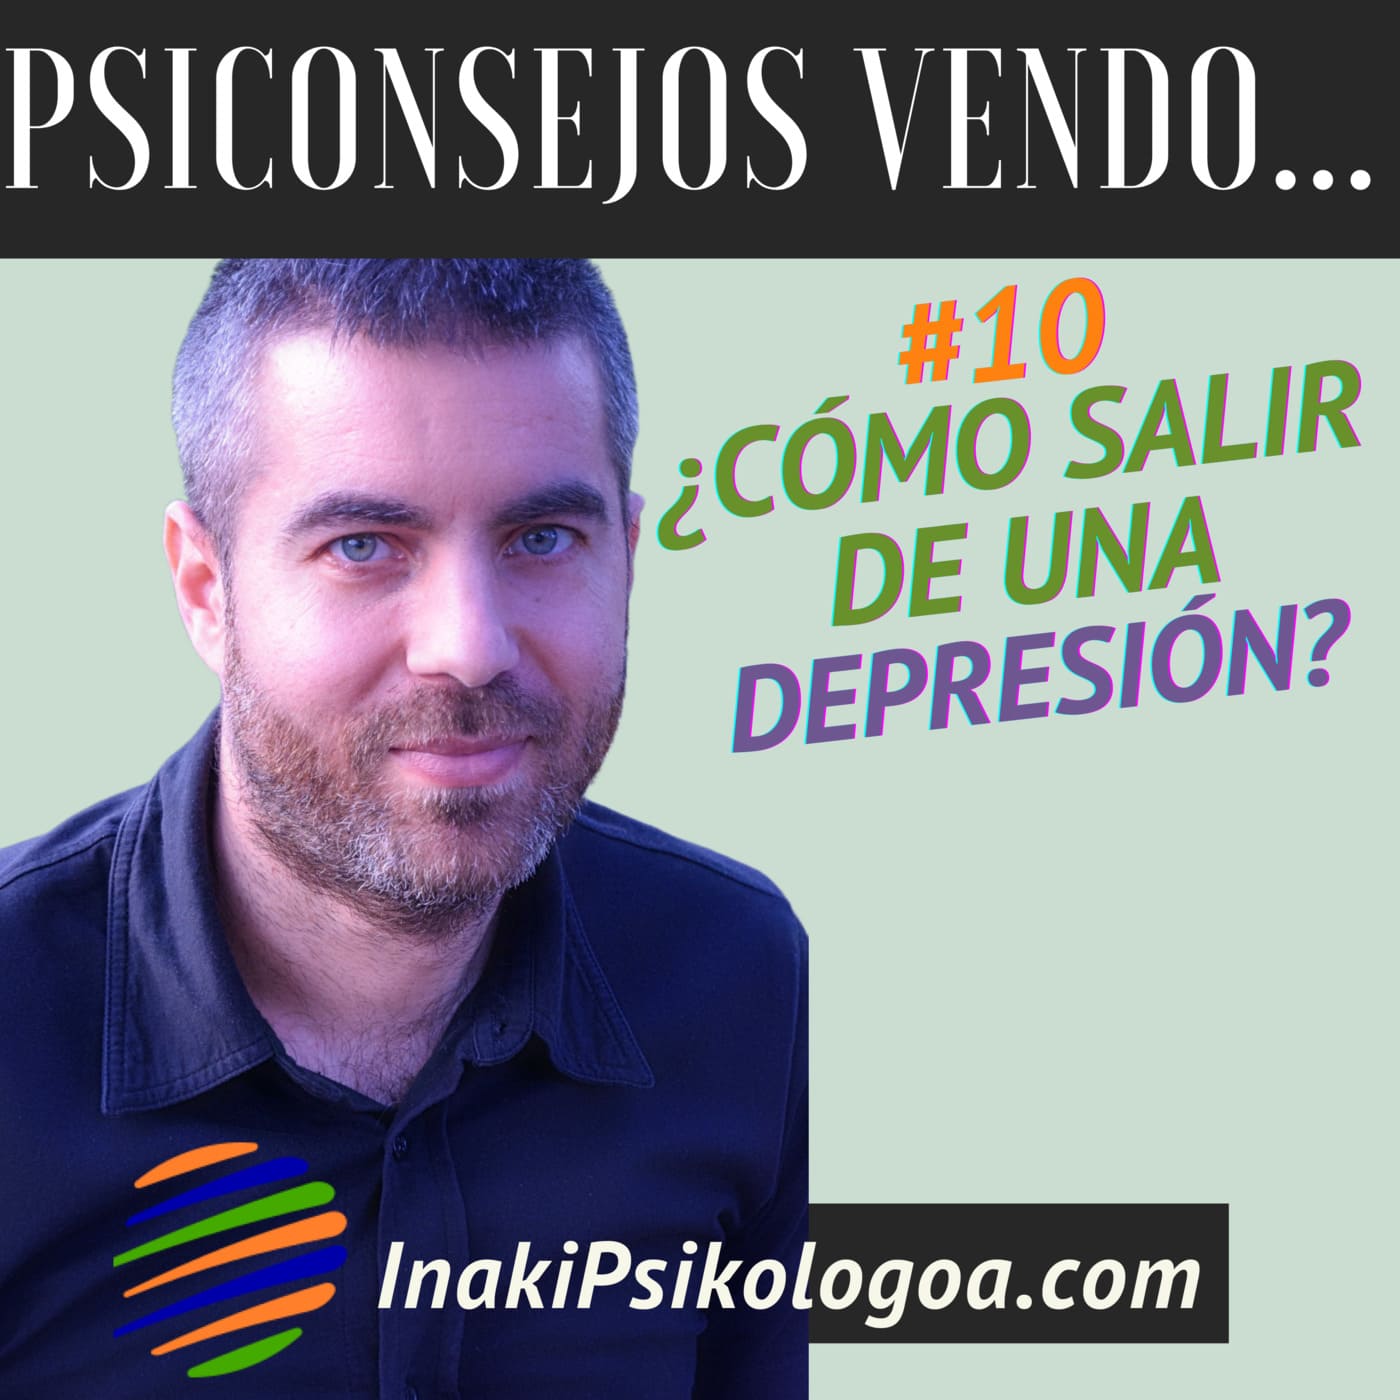 ¿Cómo salir de una depresión? – EP10